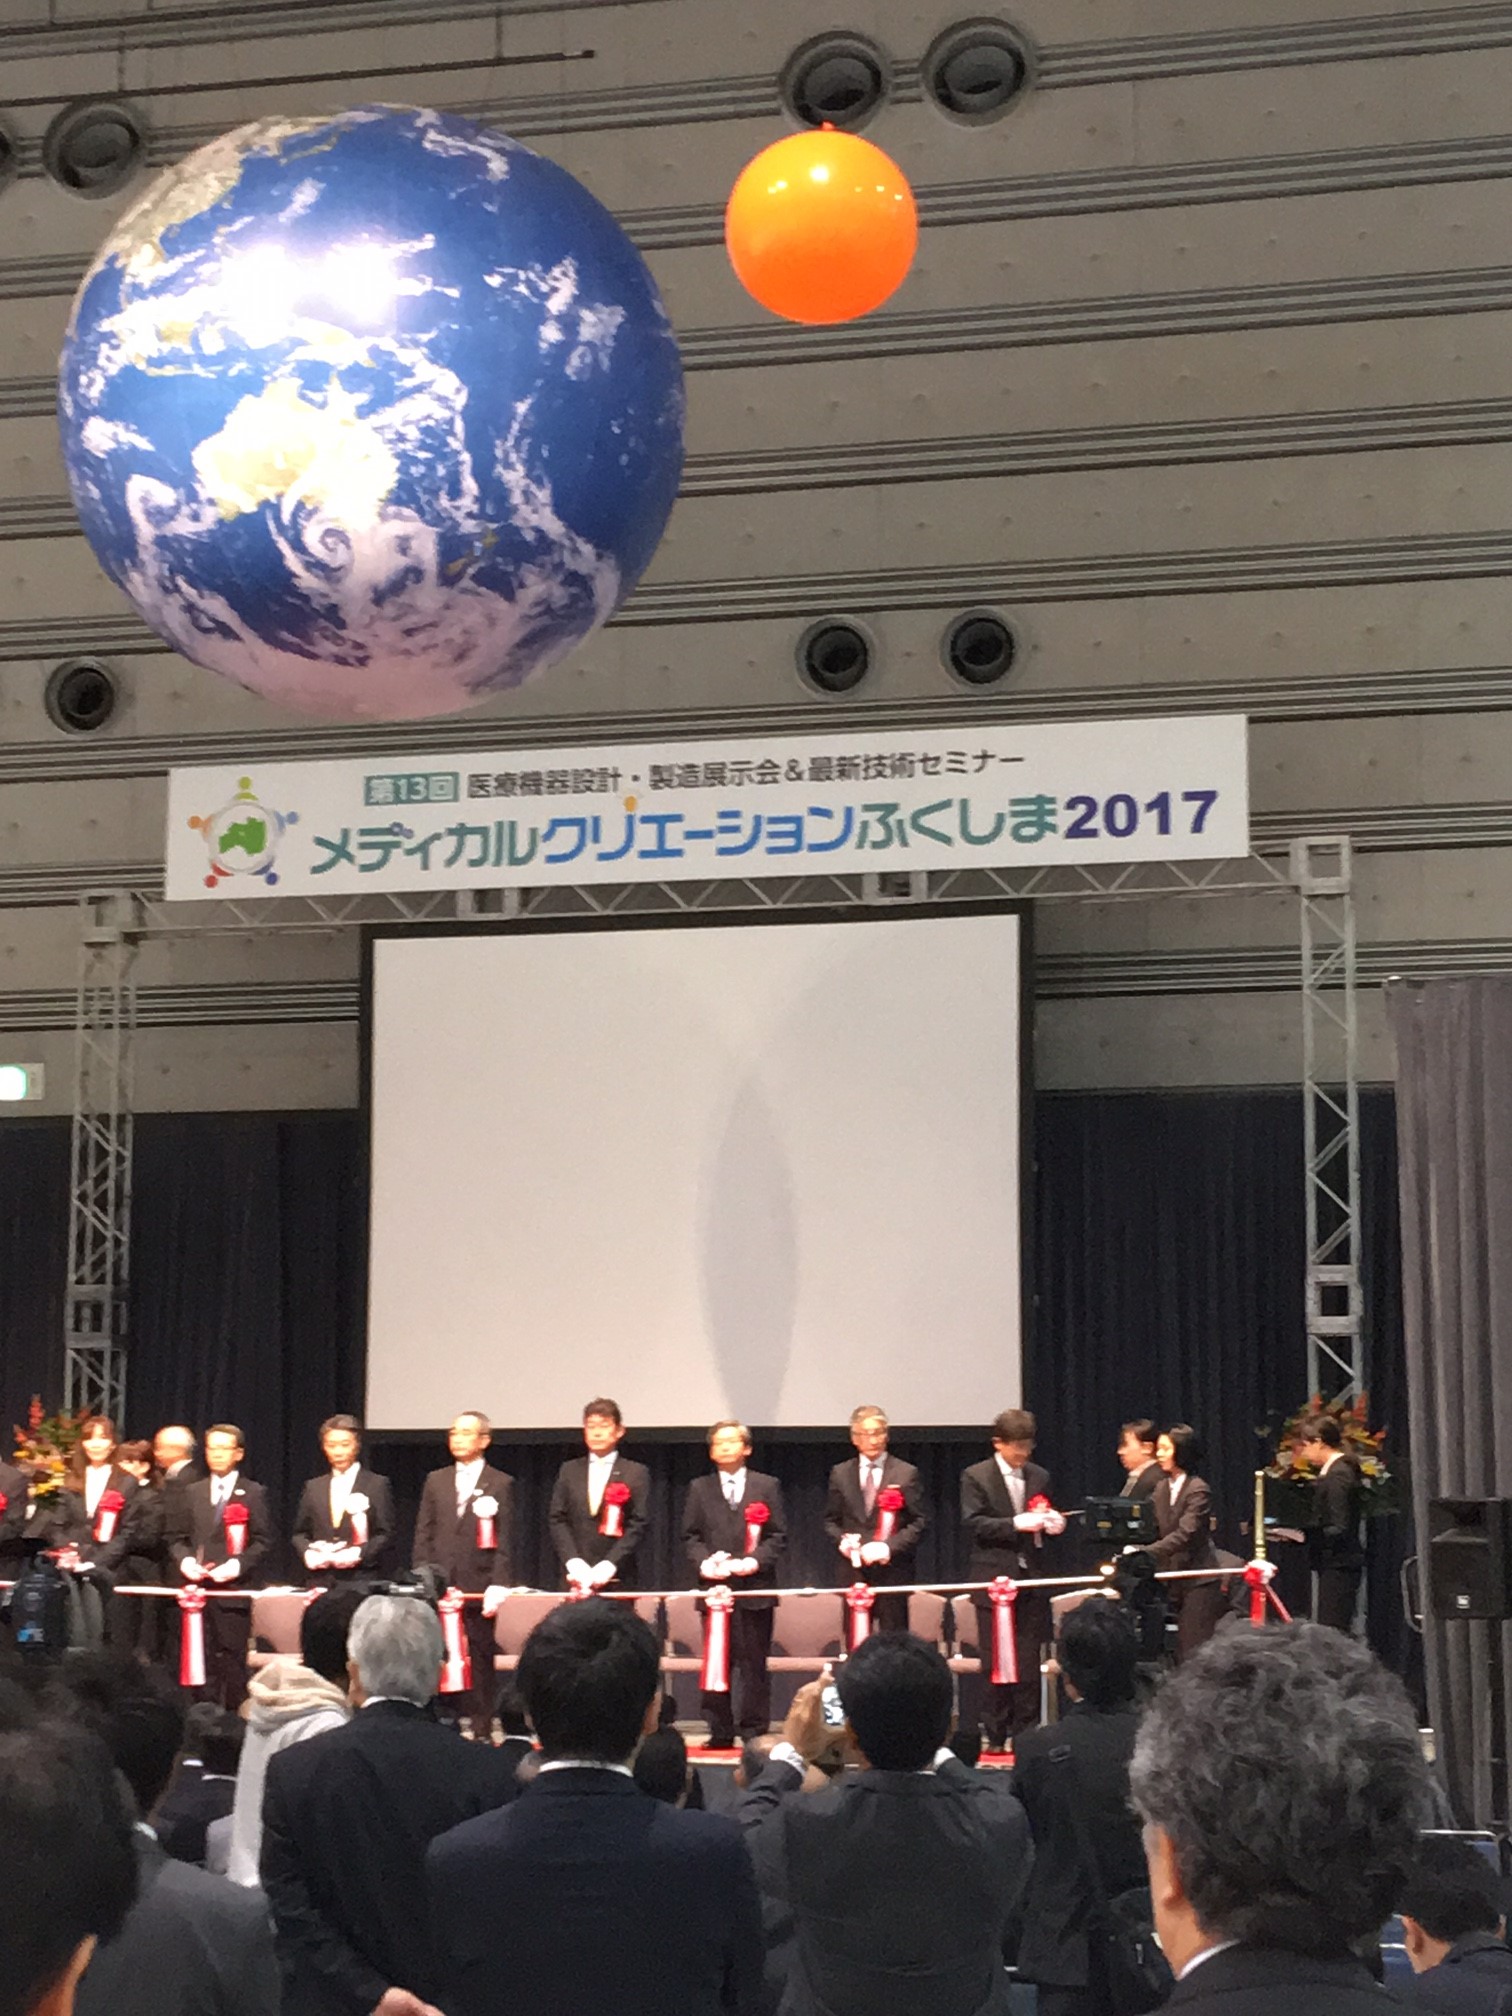 メディカルクリエーション福島2017開会式の模様